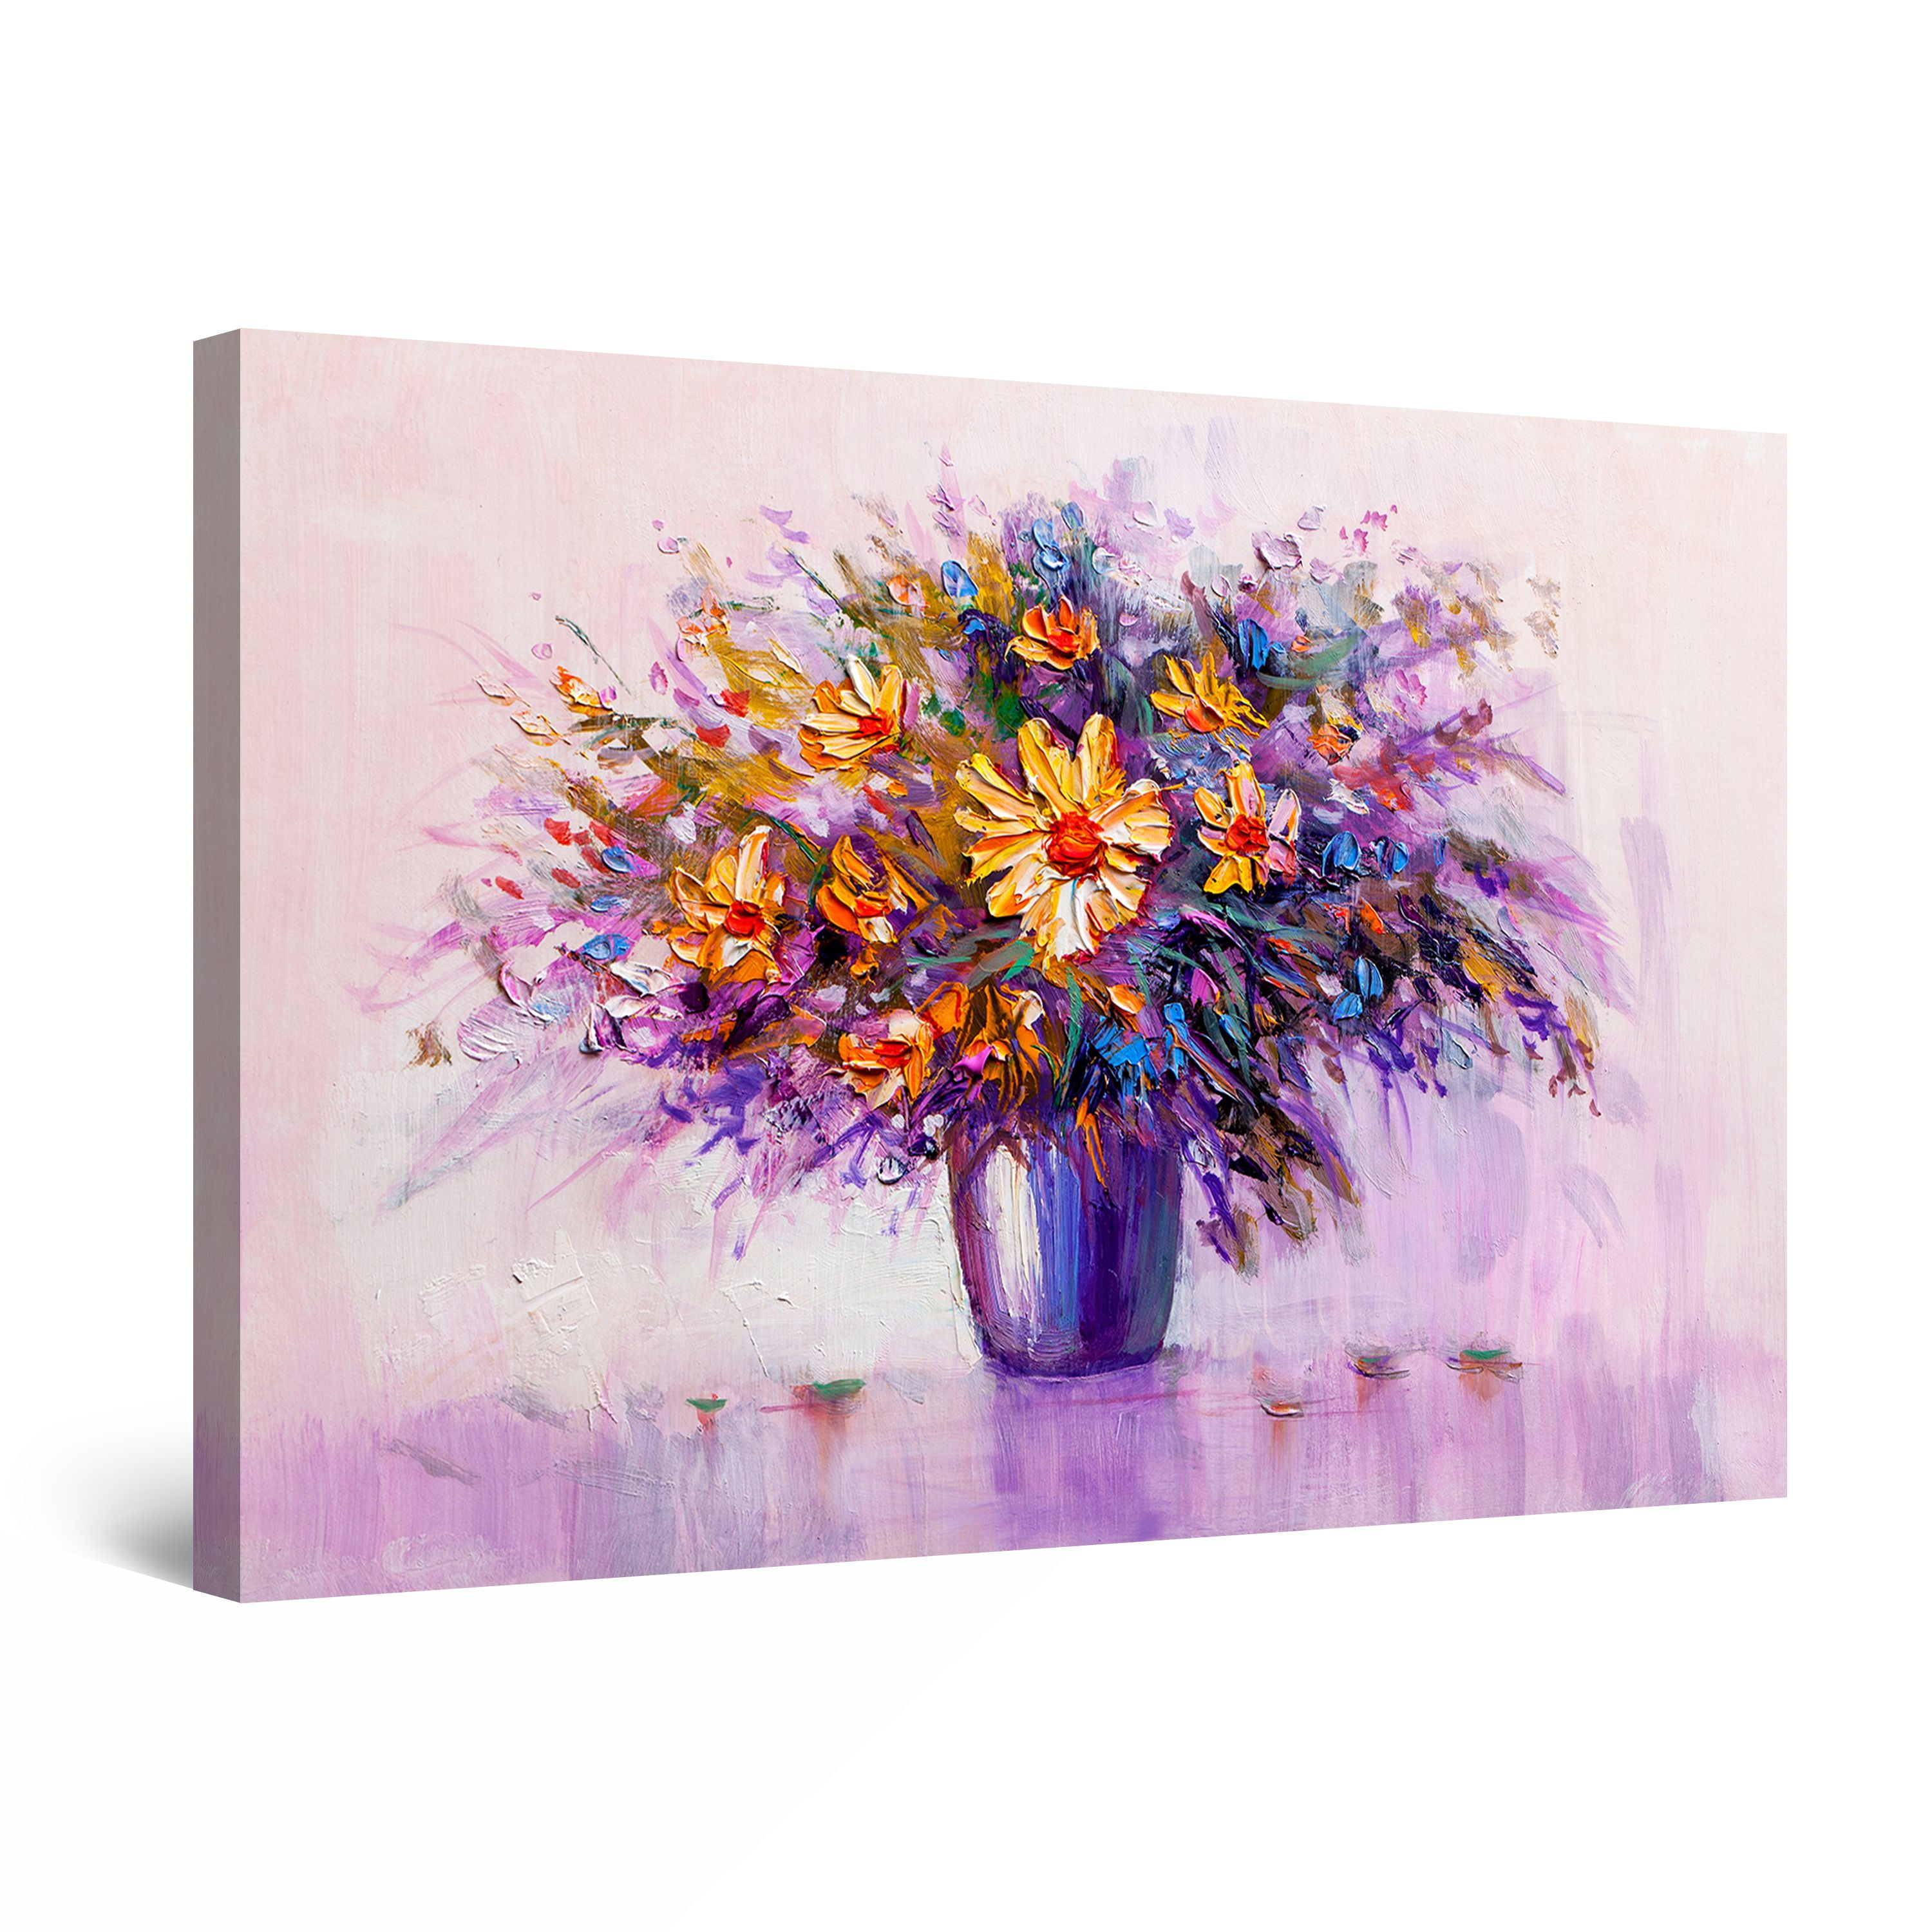 Startonight Canvas Wall Art Abstract - Yellow Flowers in Purple Vase